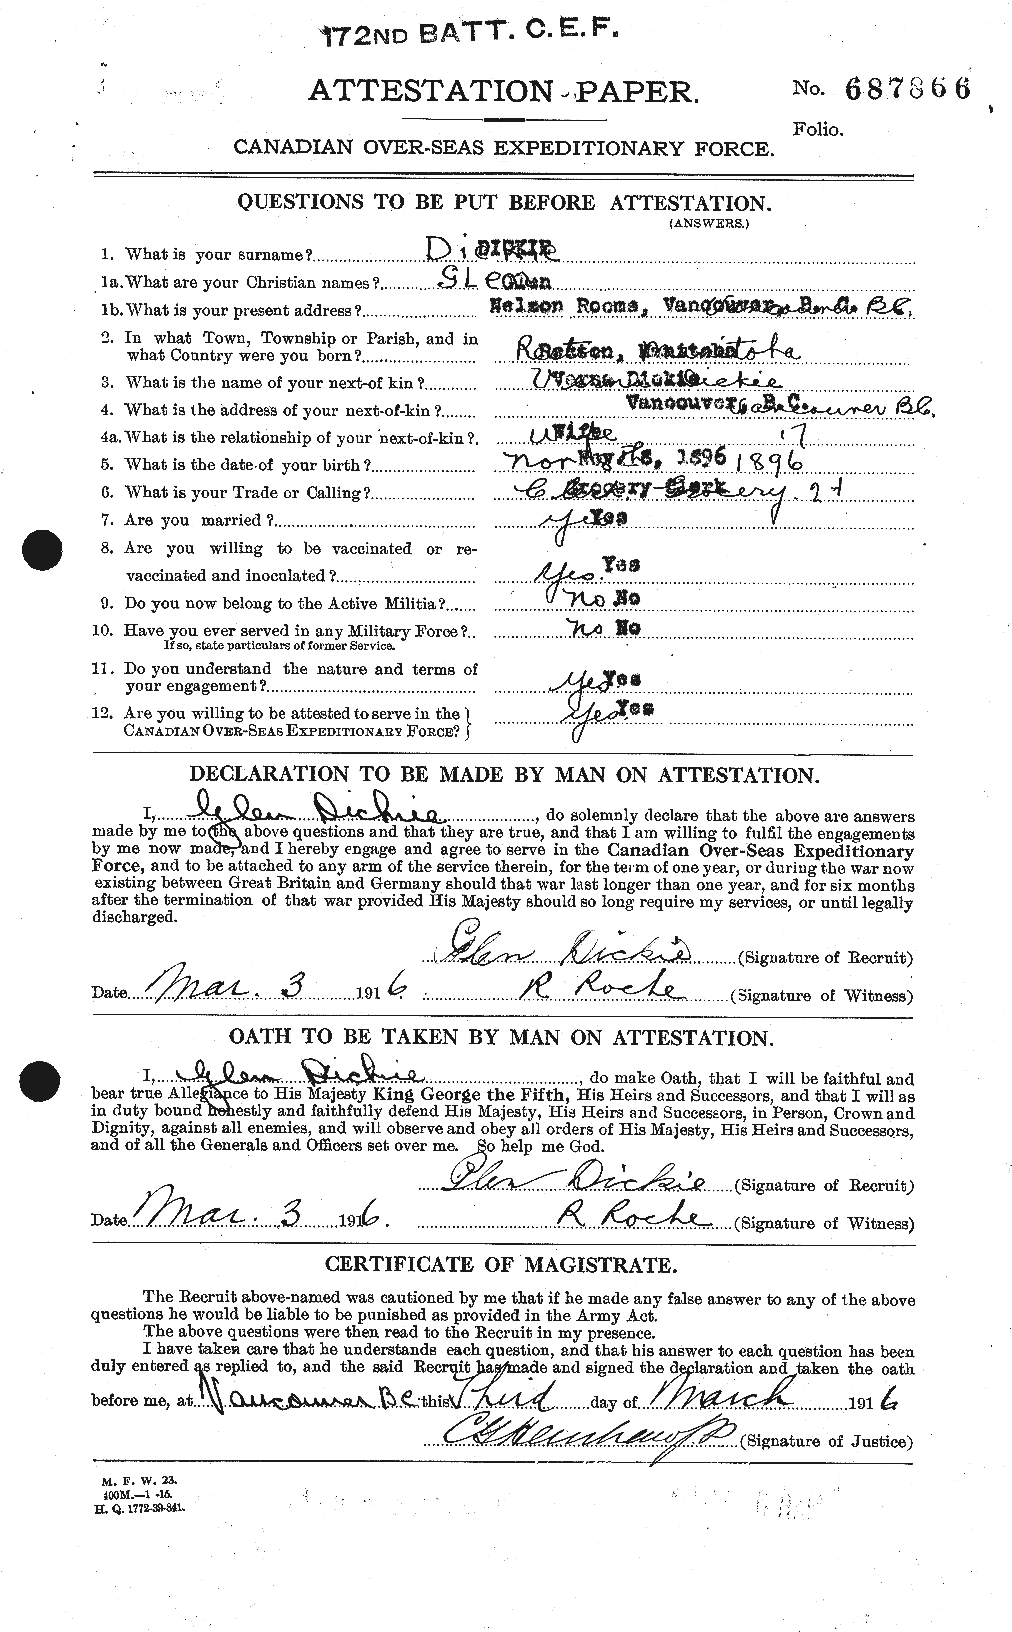 Dossiers du Personnel de la Première Guerre mondiale - CEC 290760a